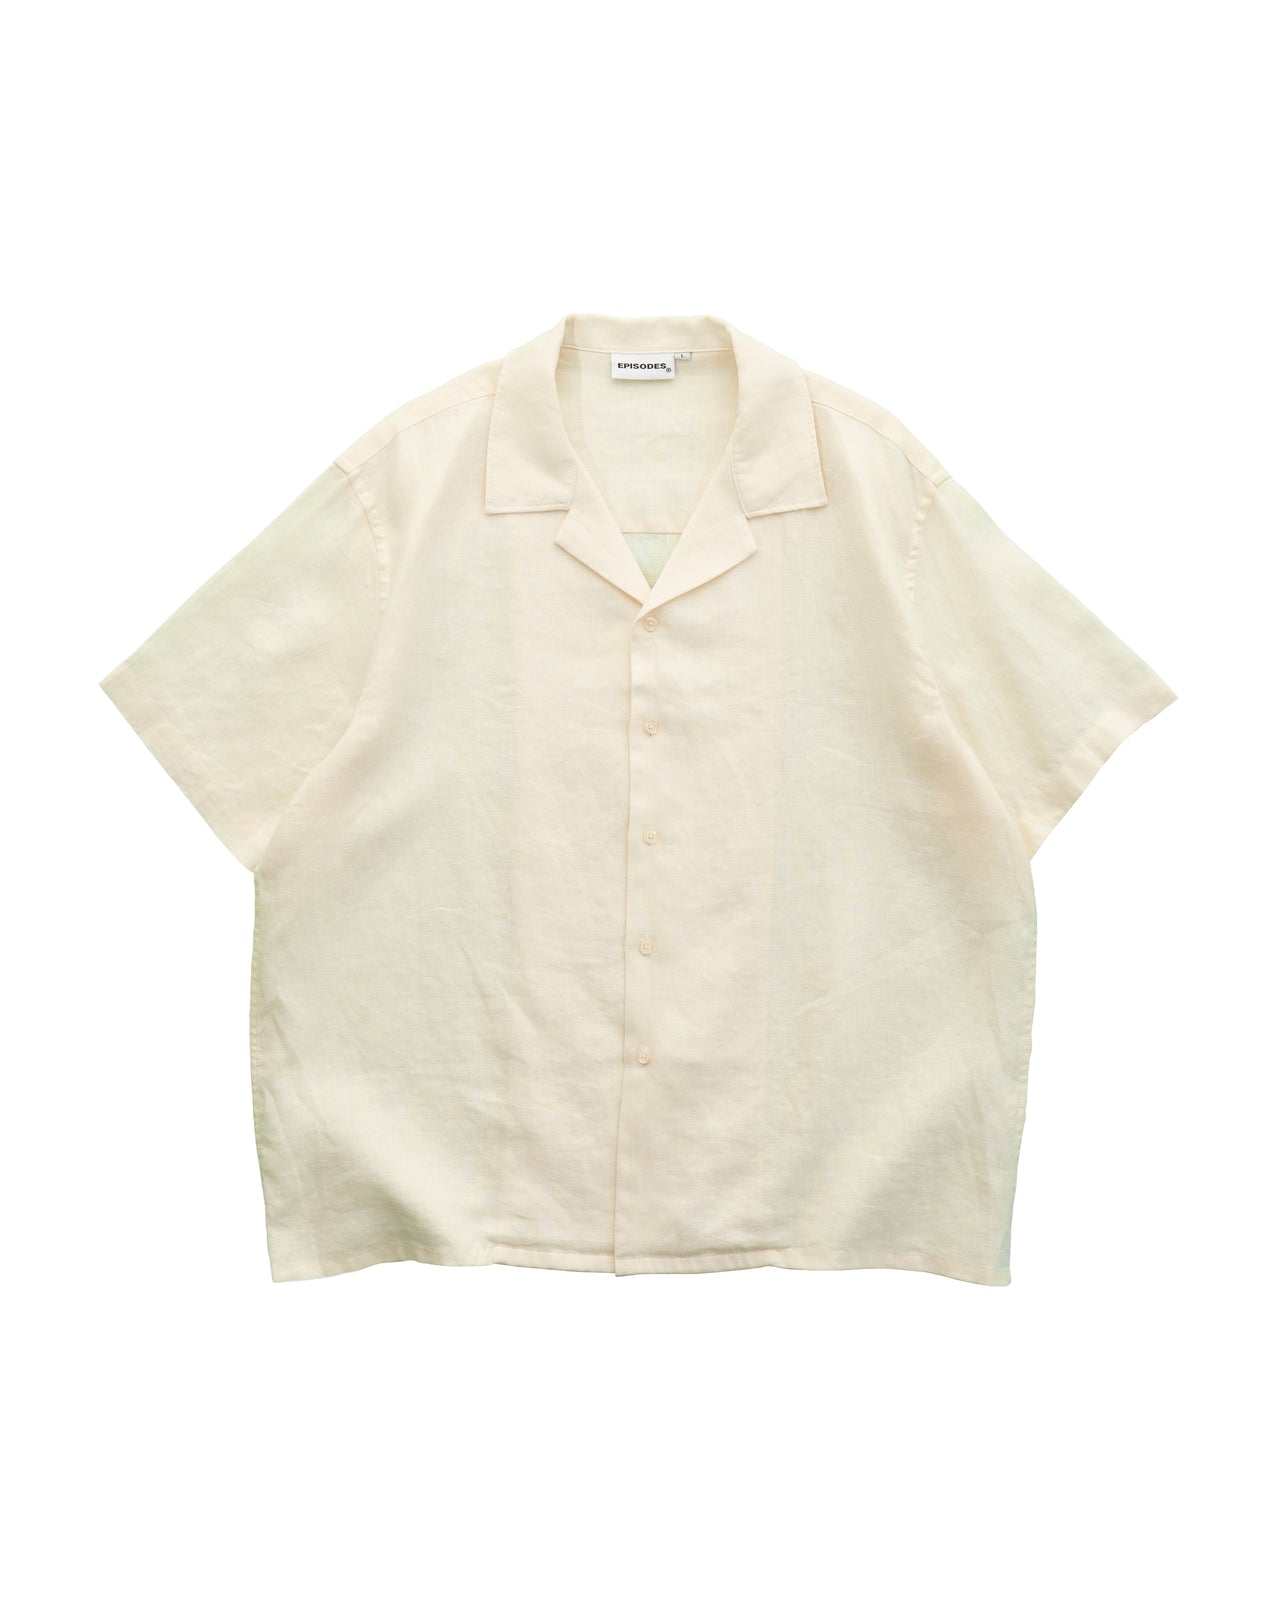 Episodes Cream Linen Shirt